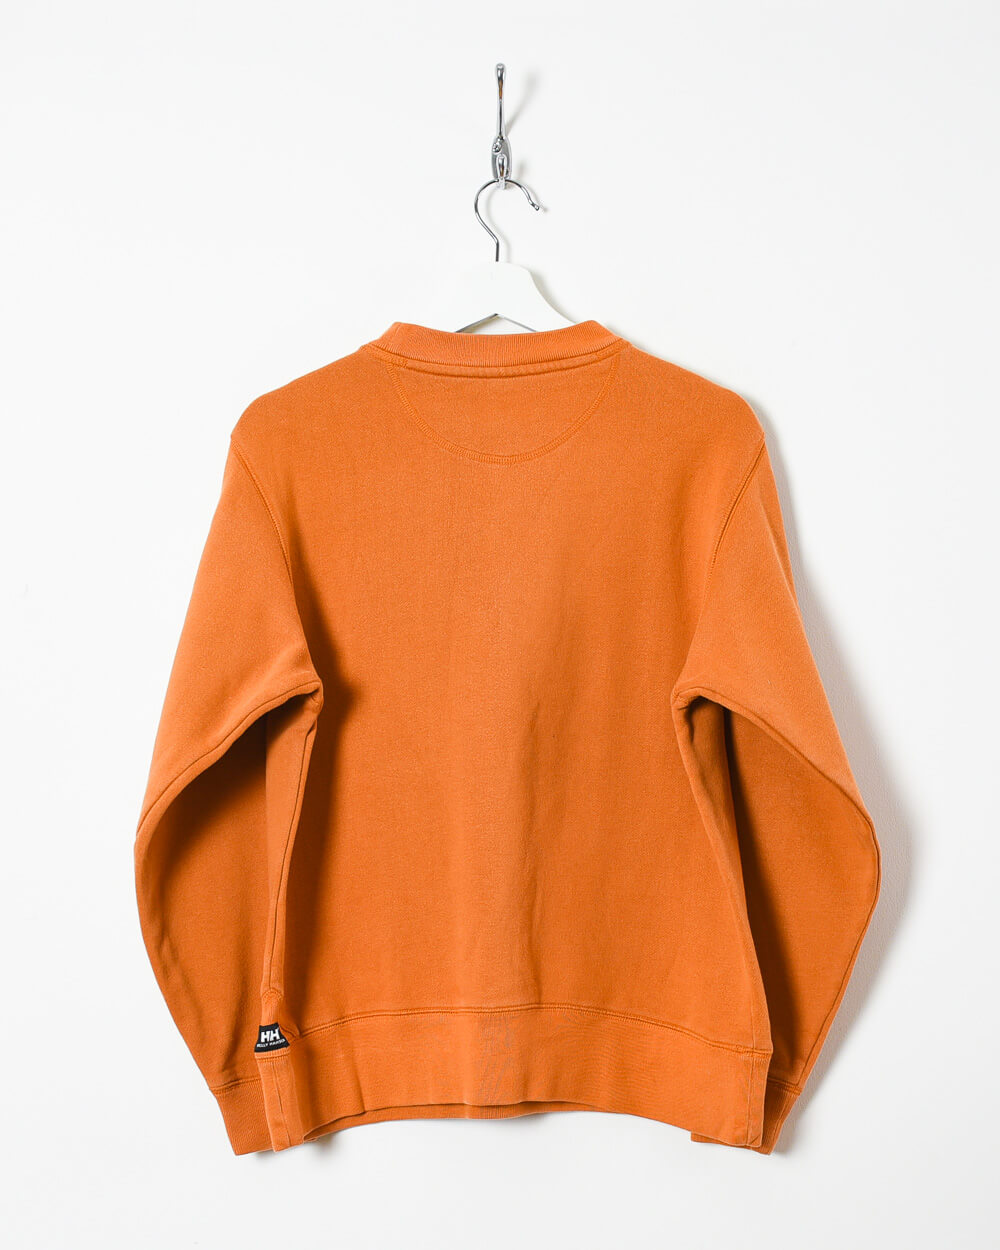 Orange Helly Hansen Sweatshirt - X-Small